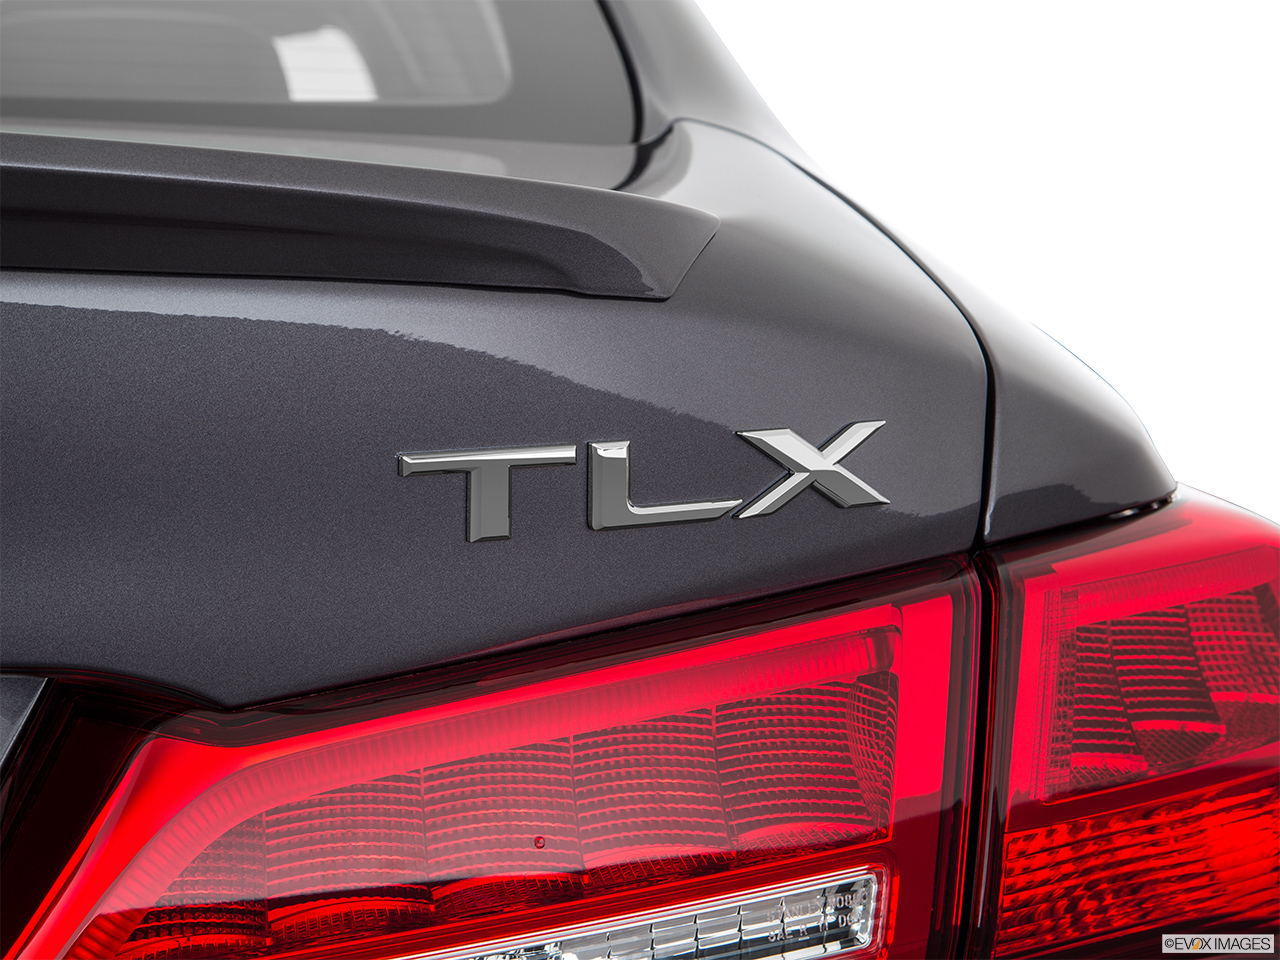 2018 Acura TLX 3.5L Rear model badge/emblem 